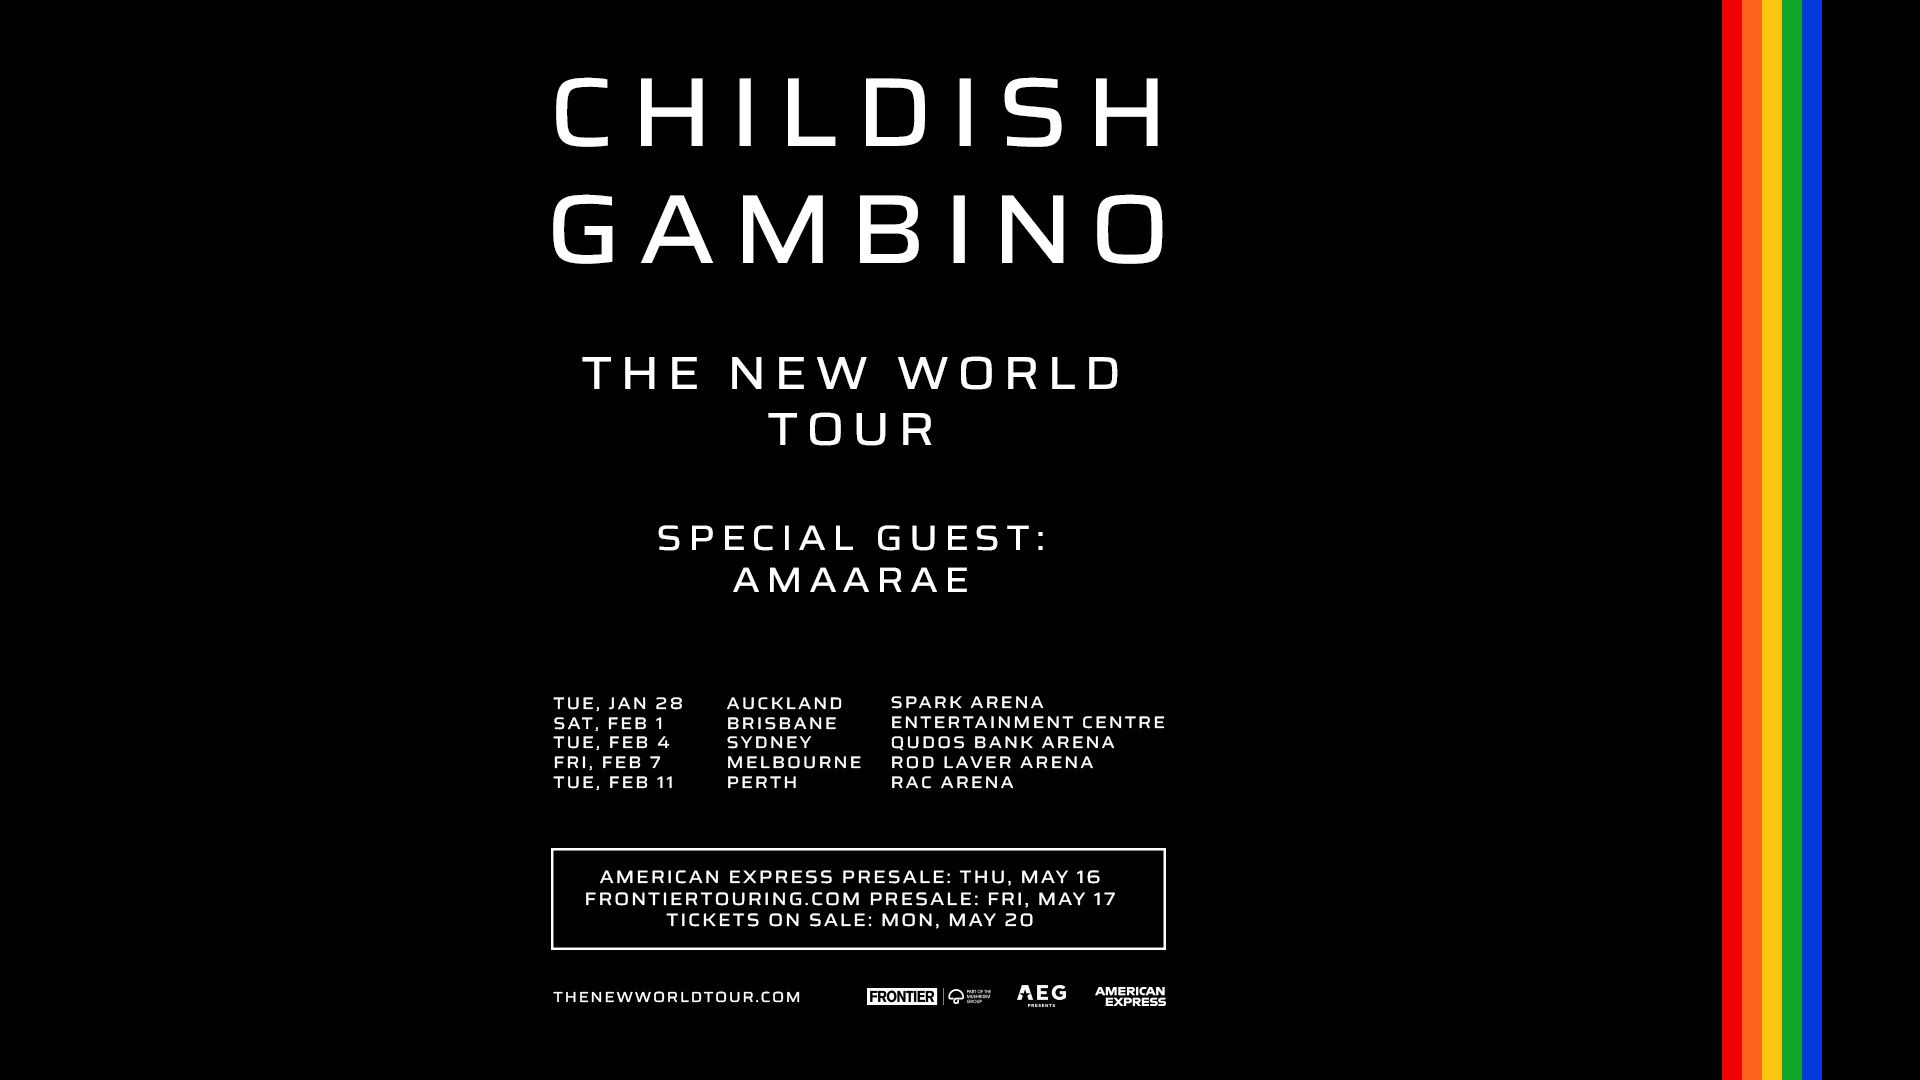 CHILDISH GAMBINO RETURNS TO 
AUSTRALIA & NEW ZEALAND WITH THE NEW WORLD TOUR